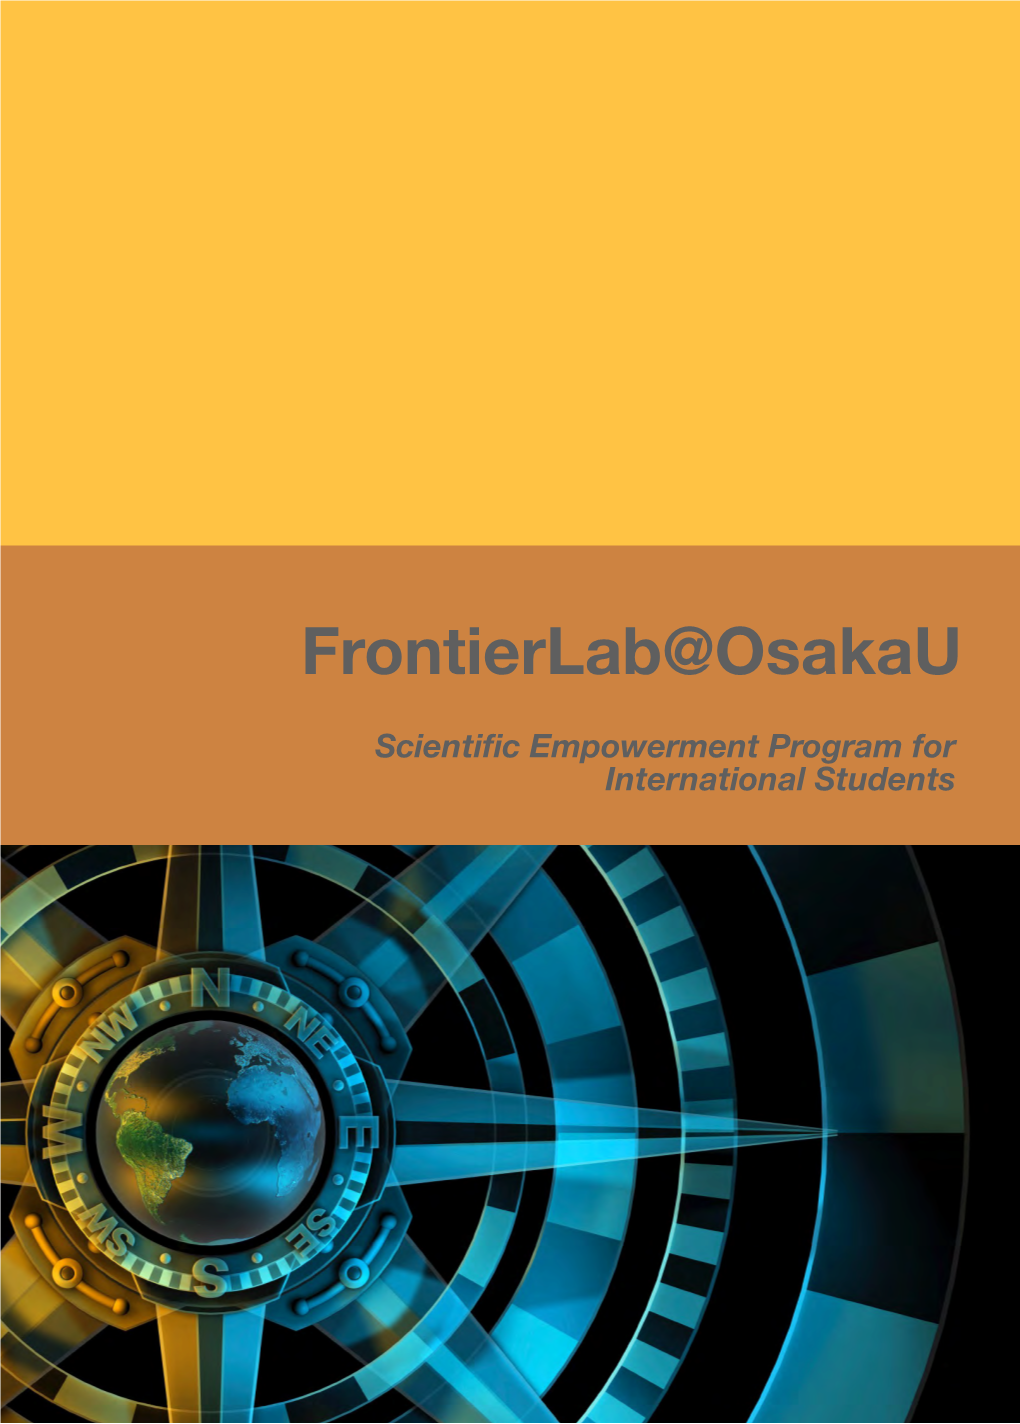 Frontierlab@Osakau